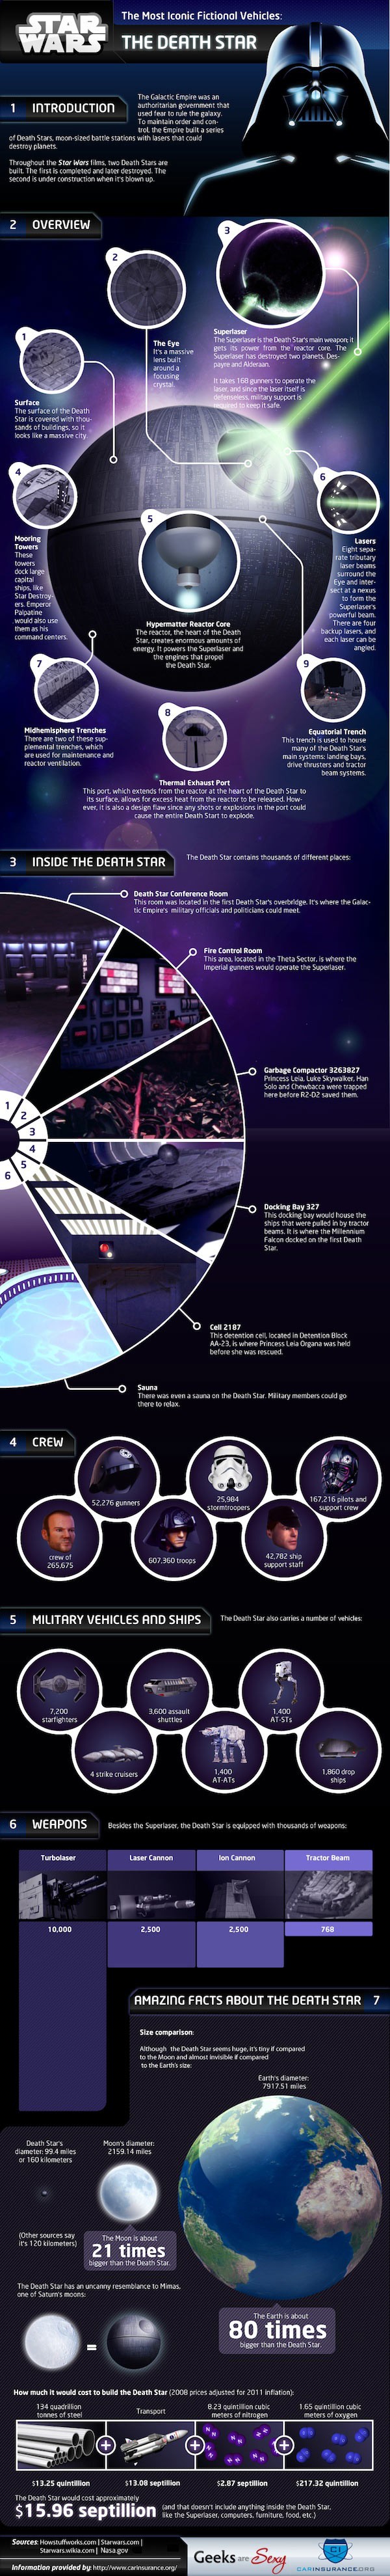 In Depth Death Star Information